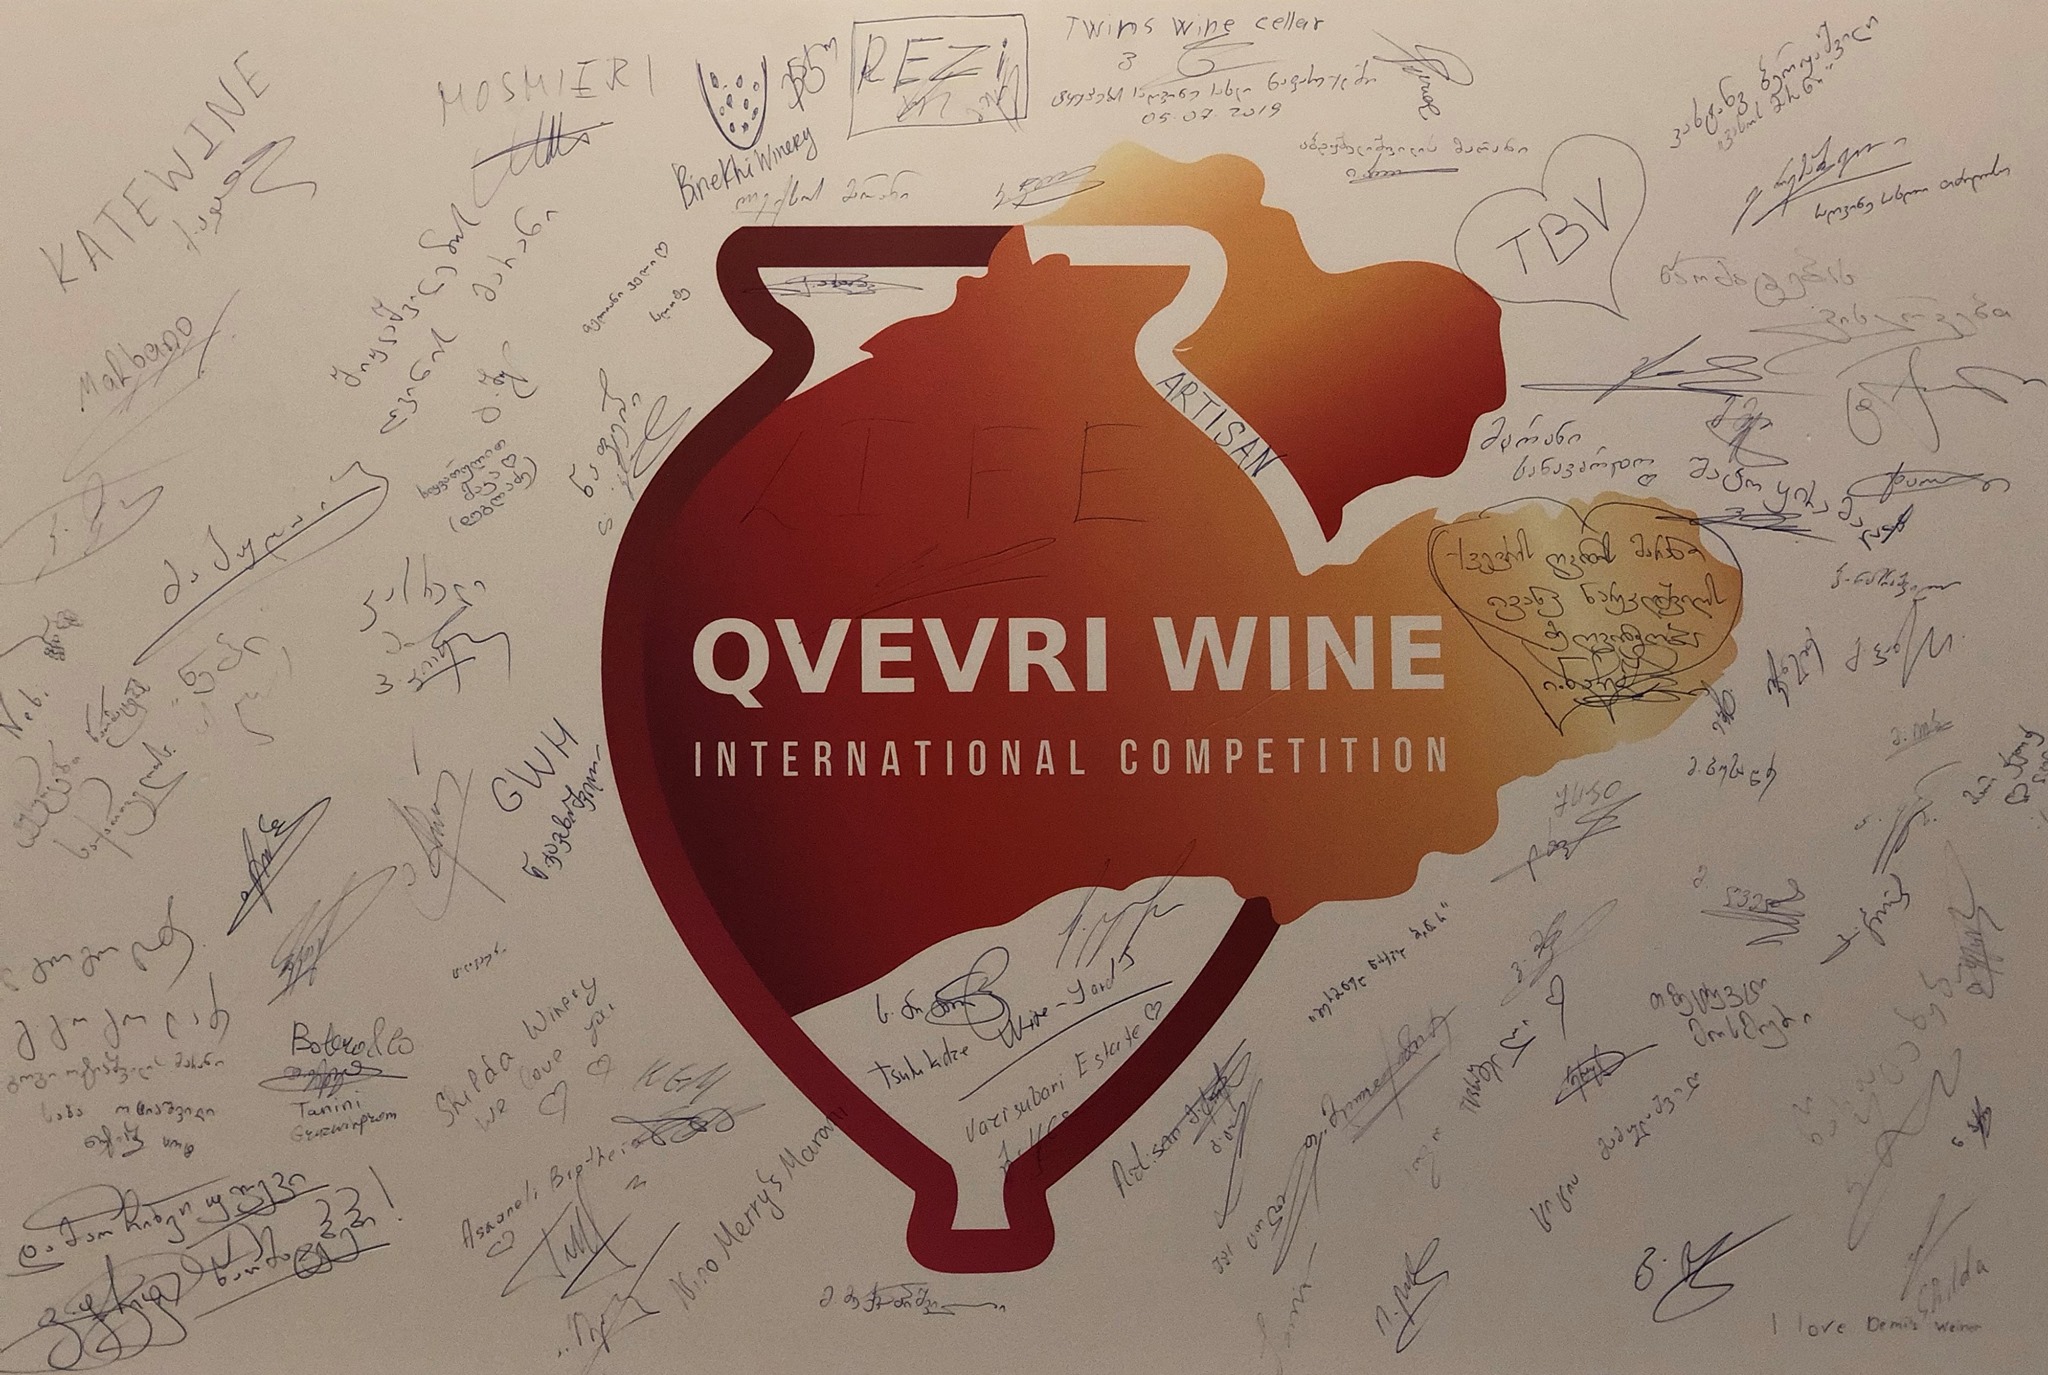 qvevri новости вино из квеври, грузинское вино, грузинское виноделие, Национальное агентство вина Грузии